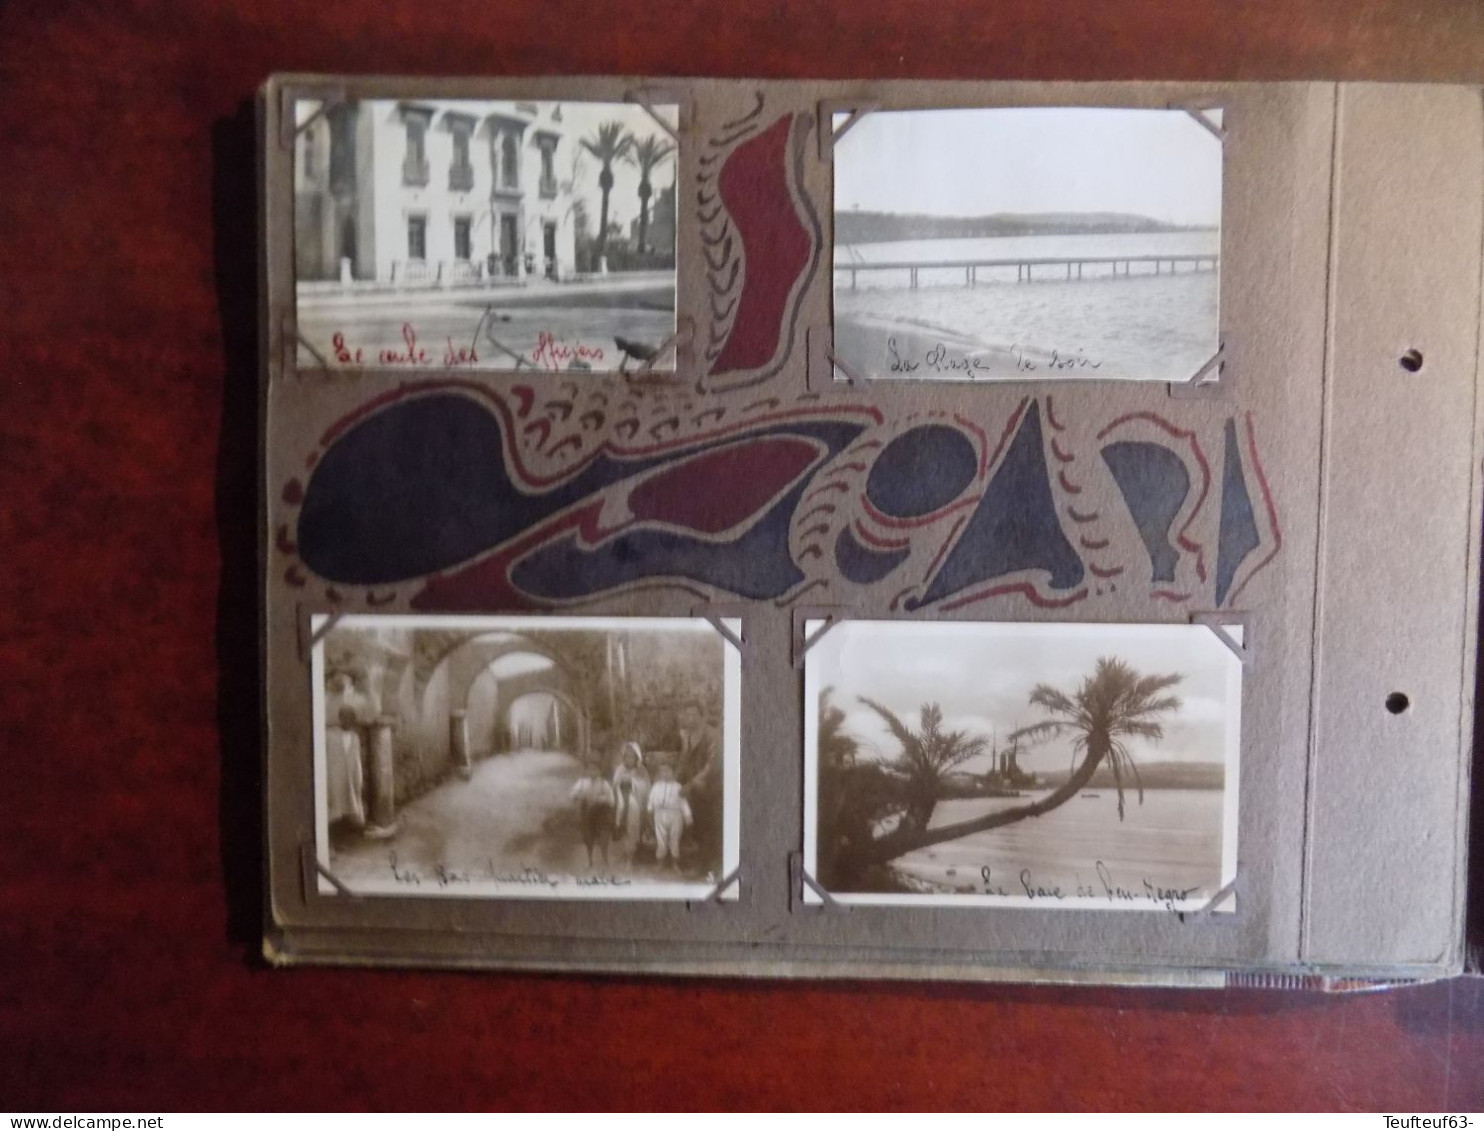 album photos " précieux souvenirs " - époque 1929 - " 61è chars de combats " - Biserte - char Renault - arabes - mosquée